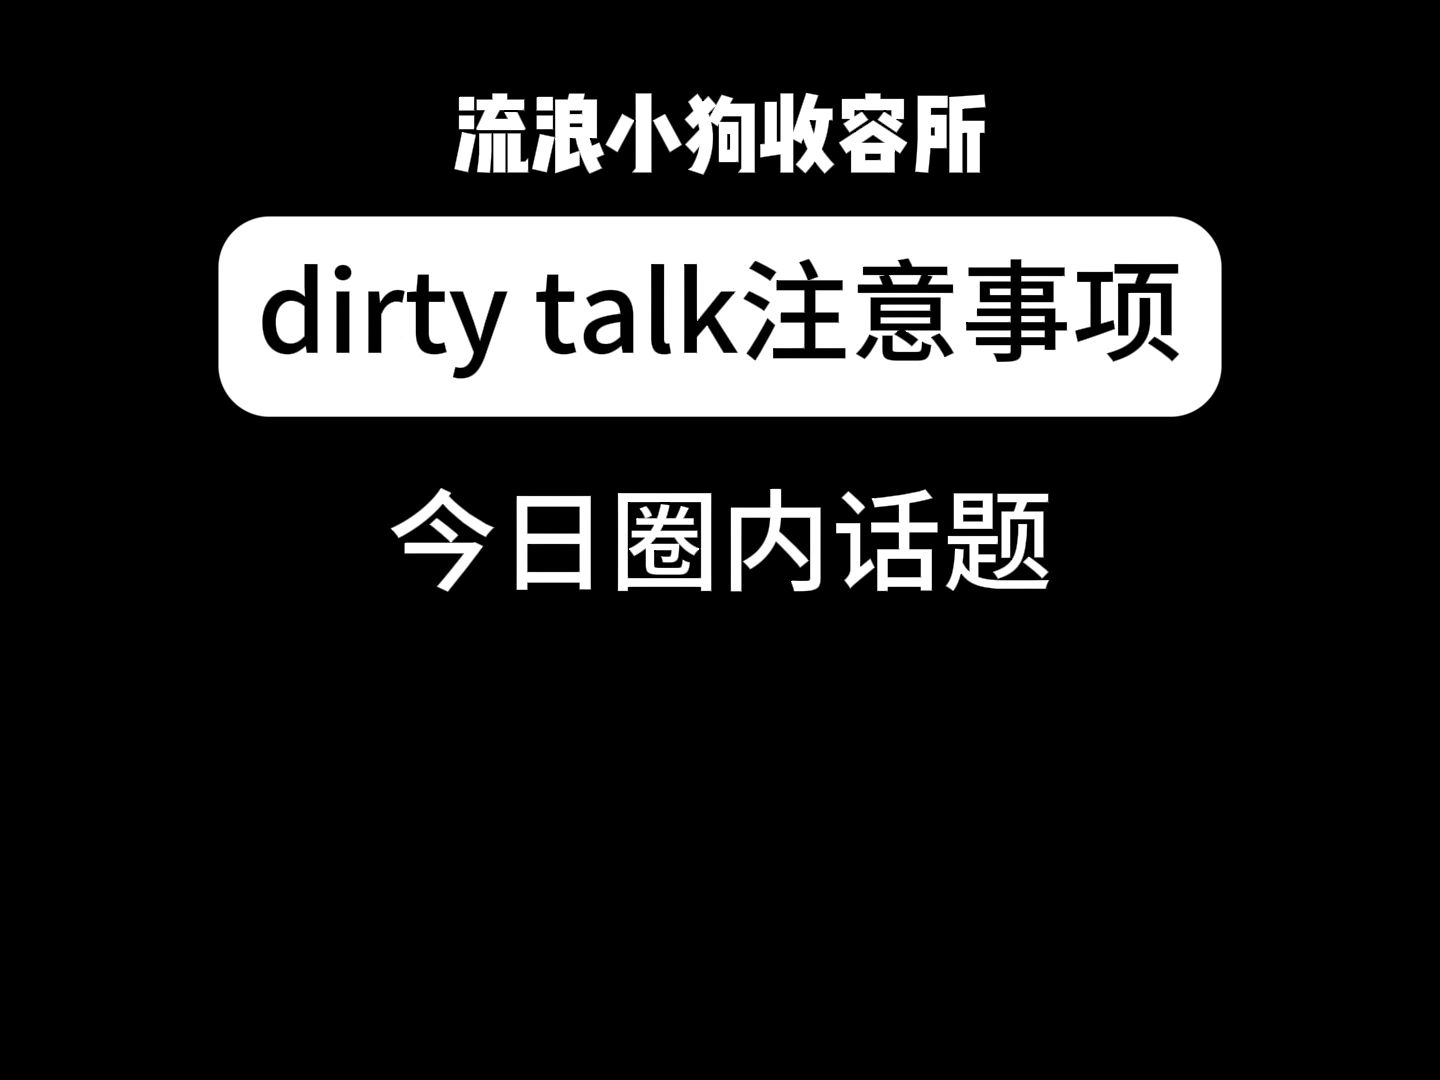 dirty talk注意事项